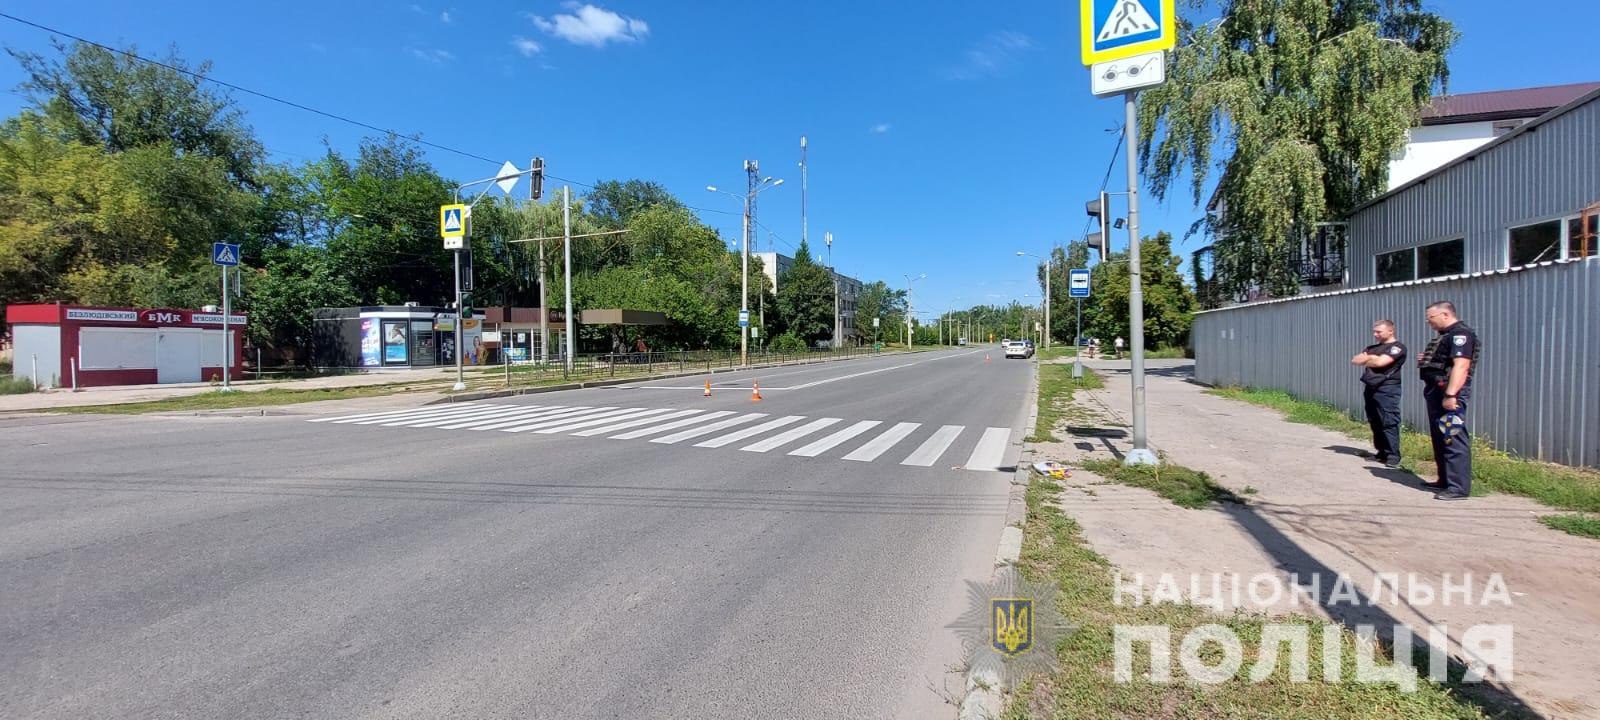 Пешеходный переход, на котором насмерть сбили женщину в Харькове